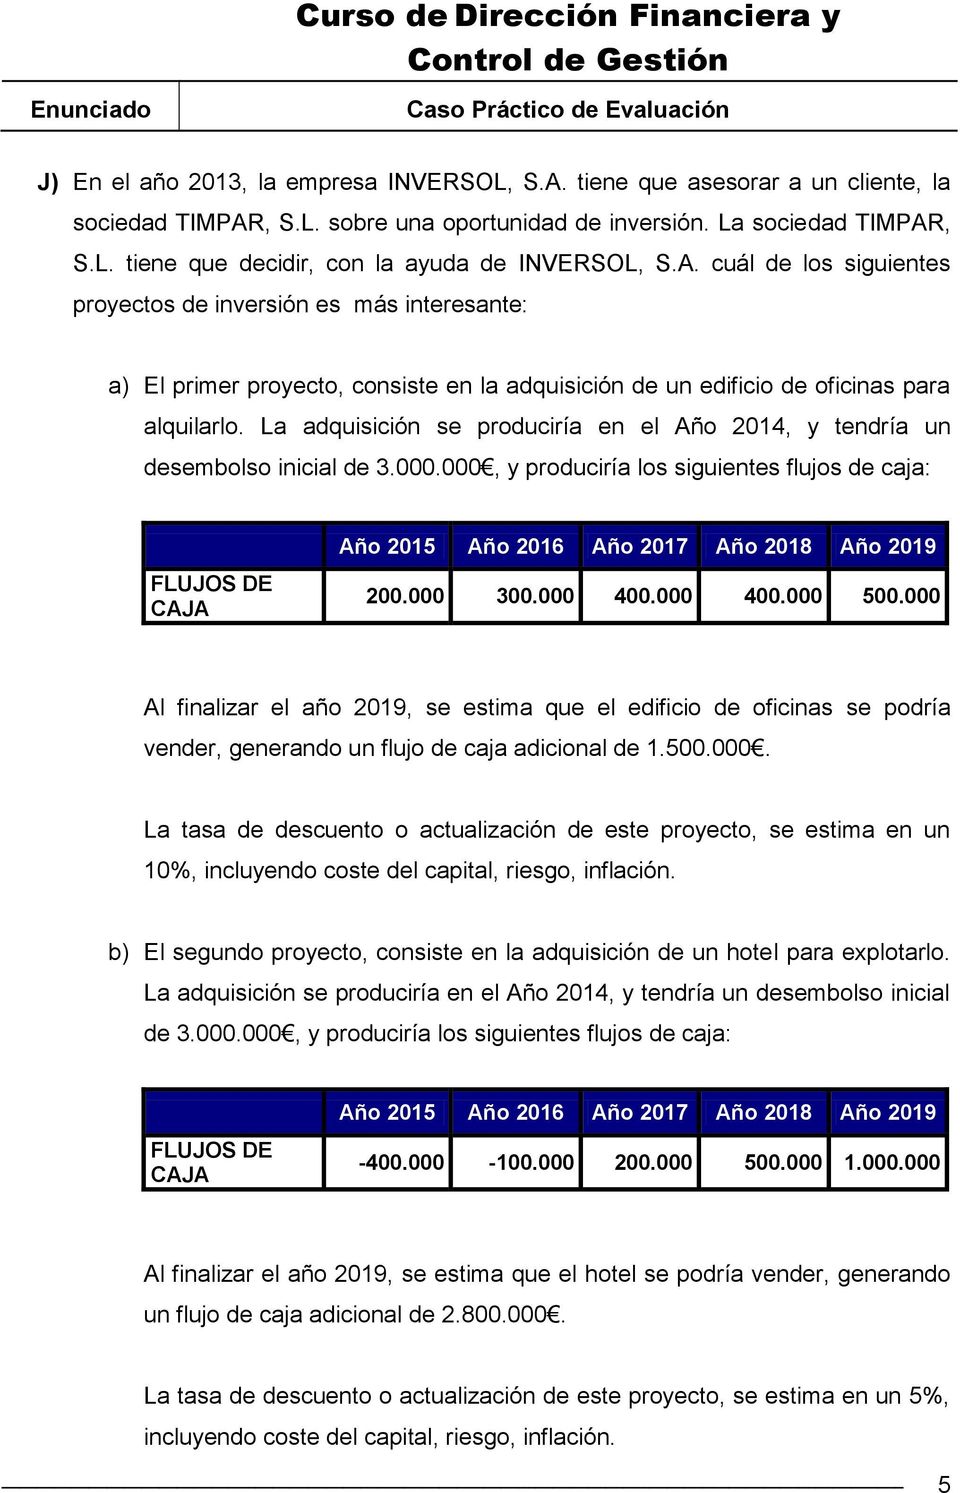 La adquisición se produciría en el Año 2014, y tendría un desembolso inicial de 3.000.000, y produciría los siguientes flujos de caja: FLUJOS DE CAJA Año 2015 Año 2016 Año 2017 Año 2018 Año 2019 200.